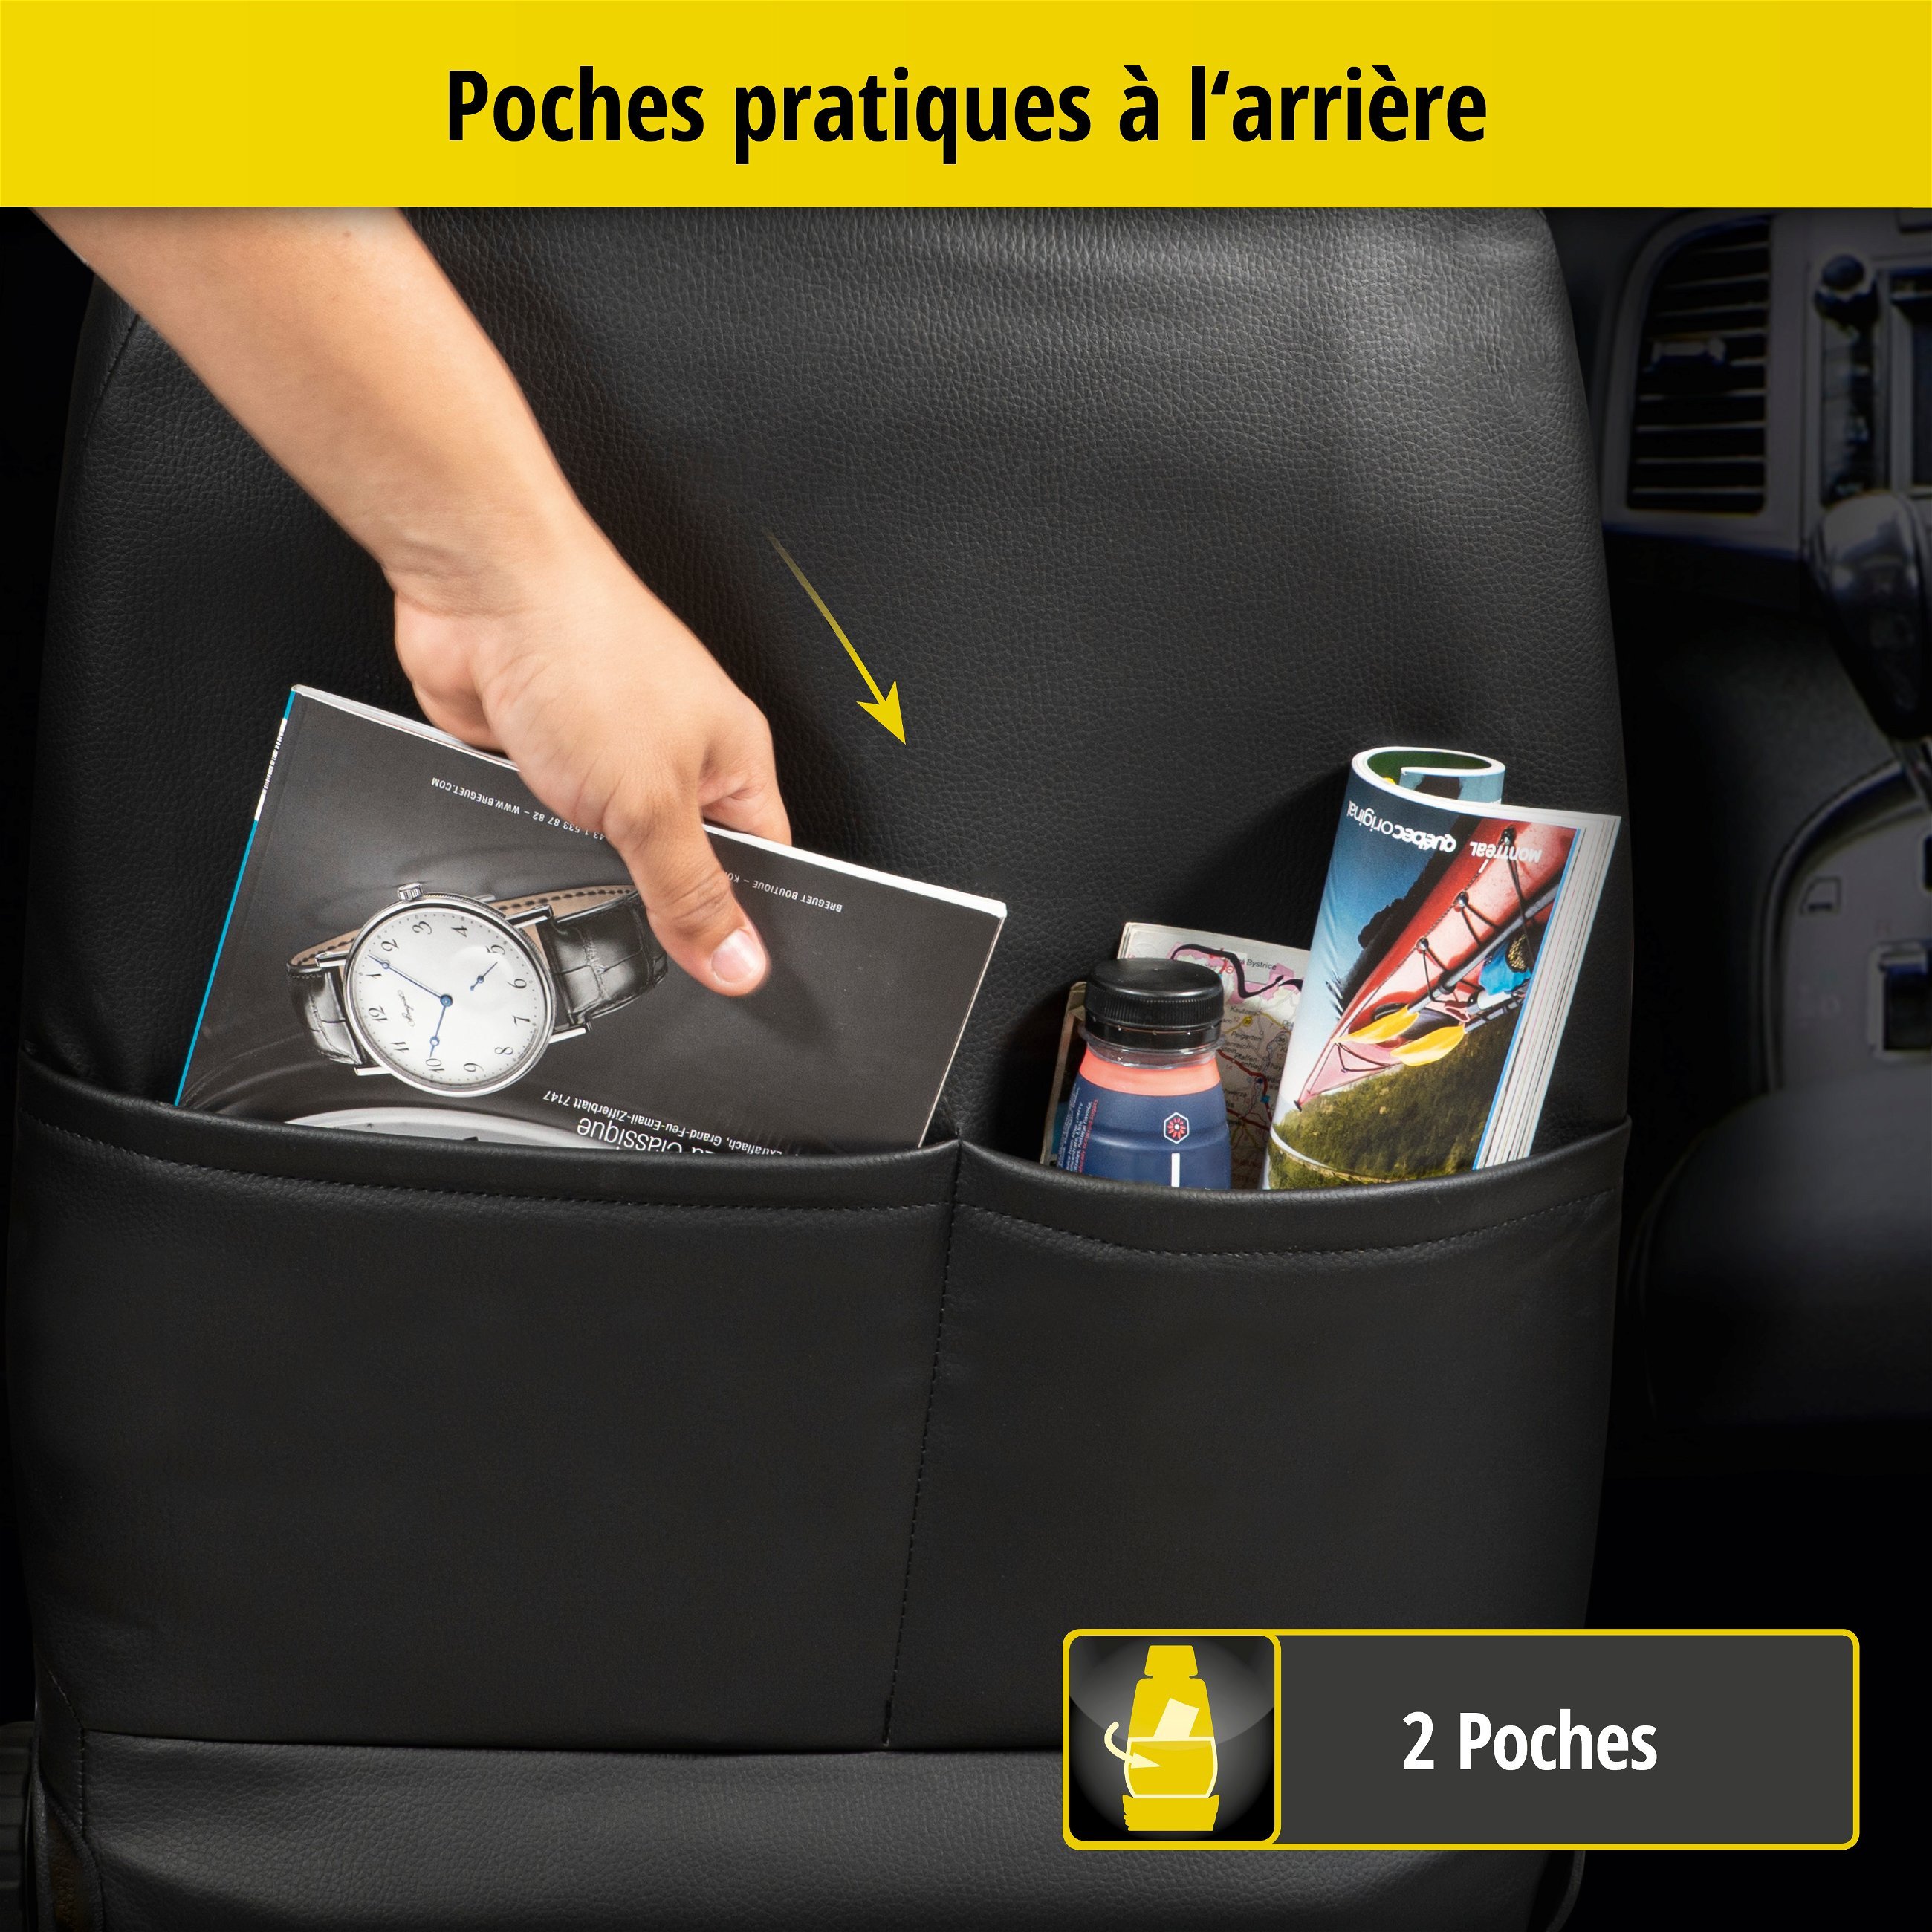 Housse de siège Robusto pour Renault Clio IV (BH) 11/2012-auj., 2 housses de siège pour les sièges normaux